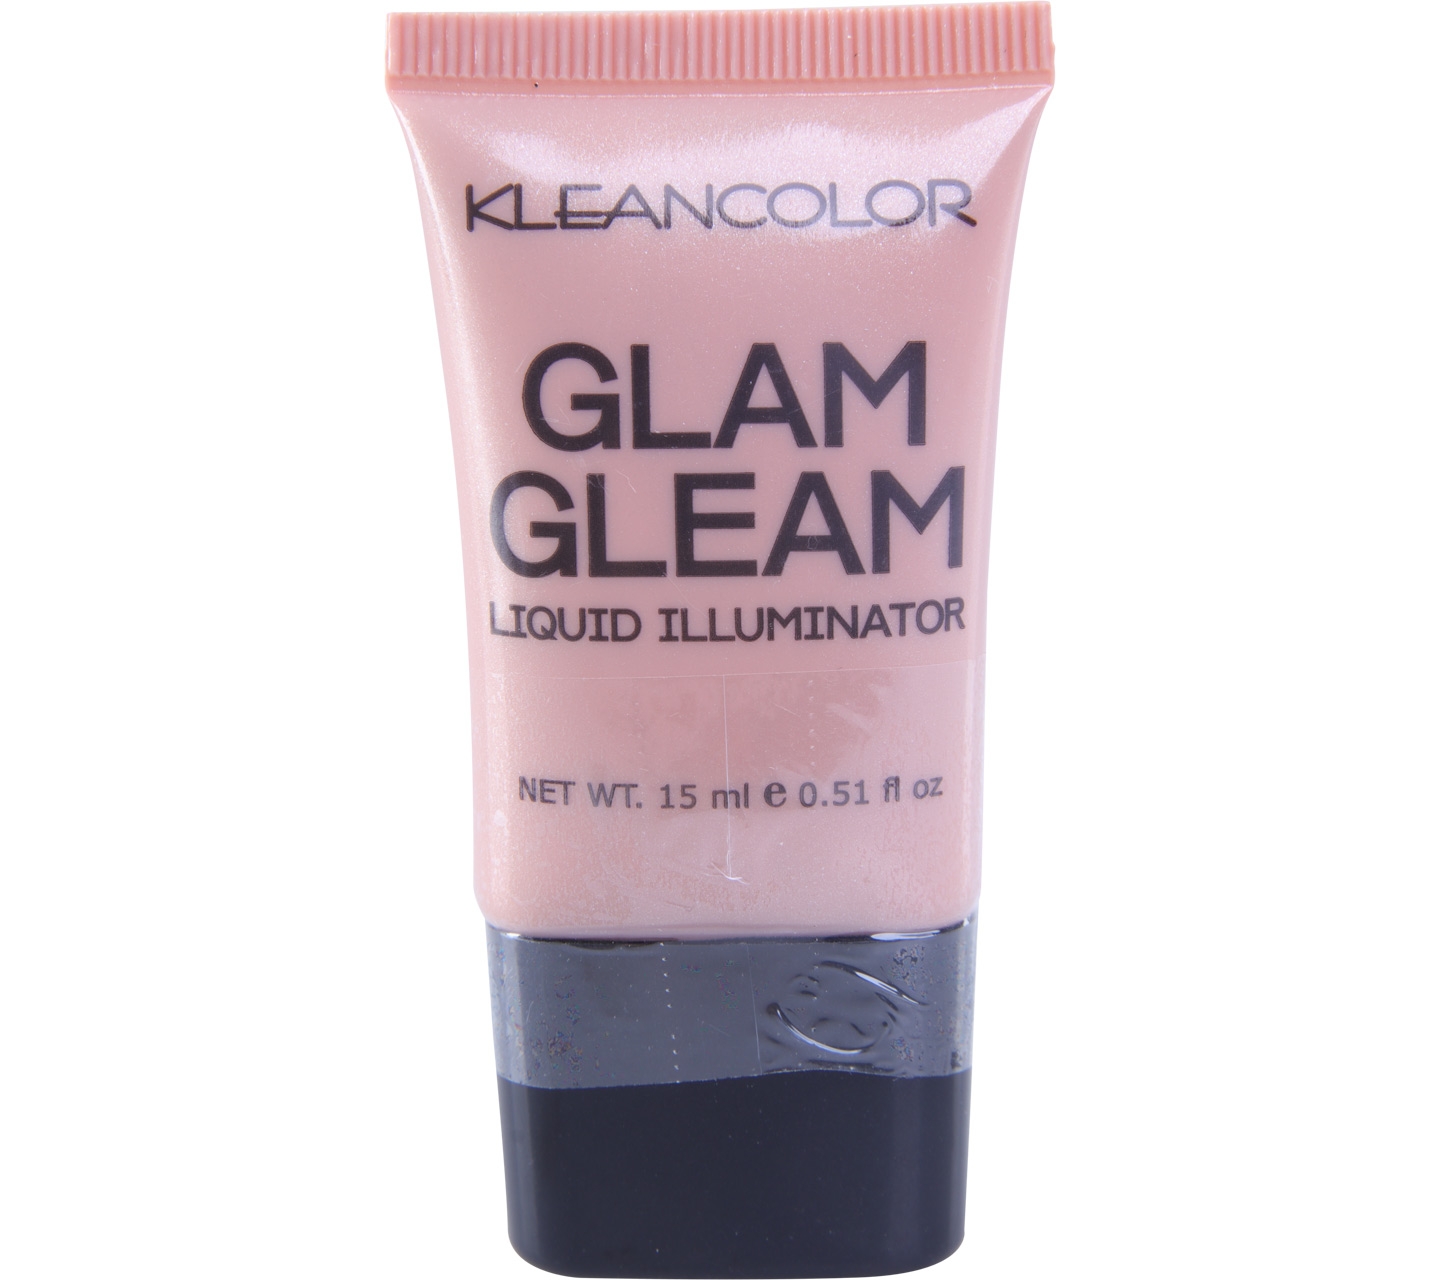 KLEANCOLOR Glam Gleam Liquid Illuminator Faces